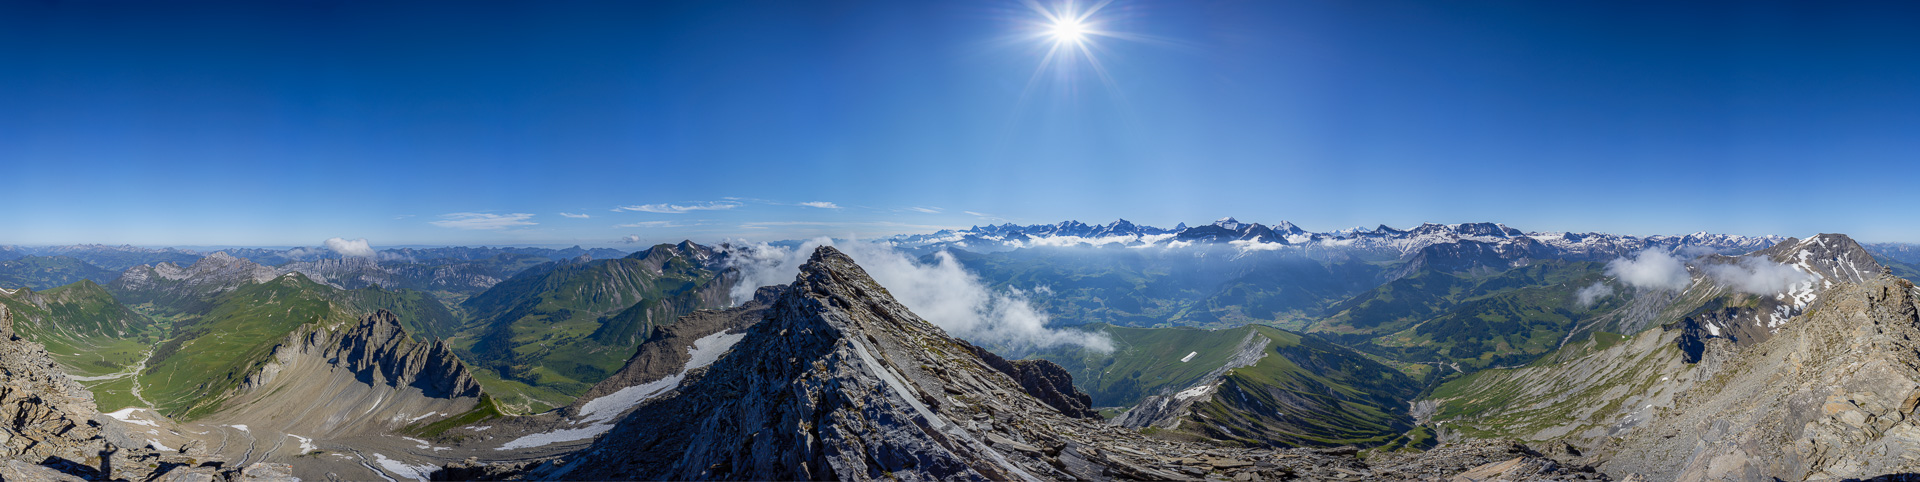 Gipfelpanorama mit der Parade der Berner Alpen.